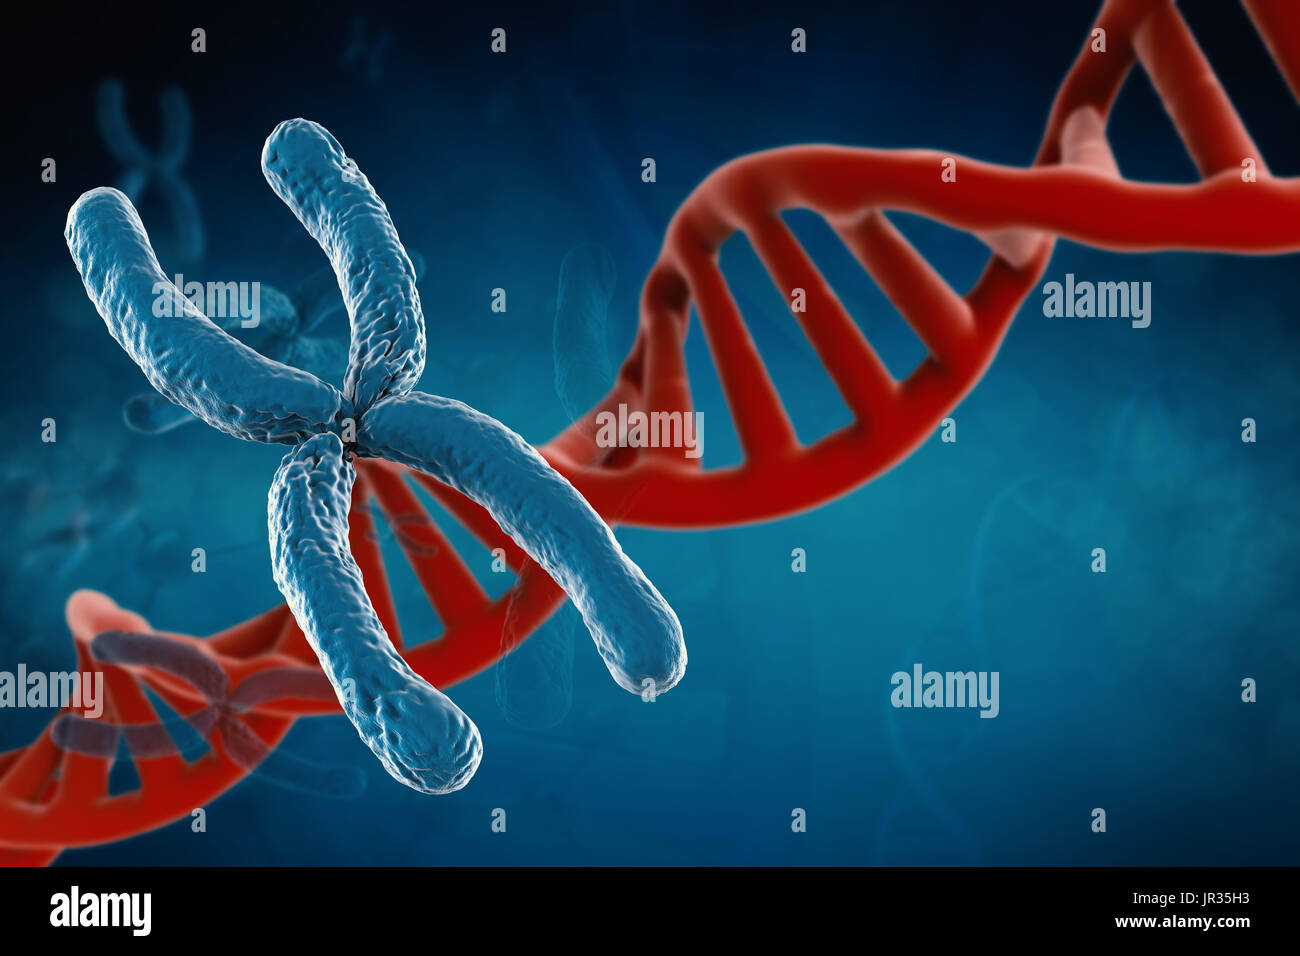 Le rendu 3d avec de l'ADN chromosomique bleu helice sur fond bleu Banque D'Images